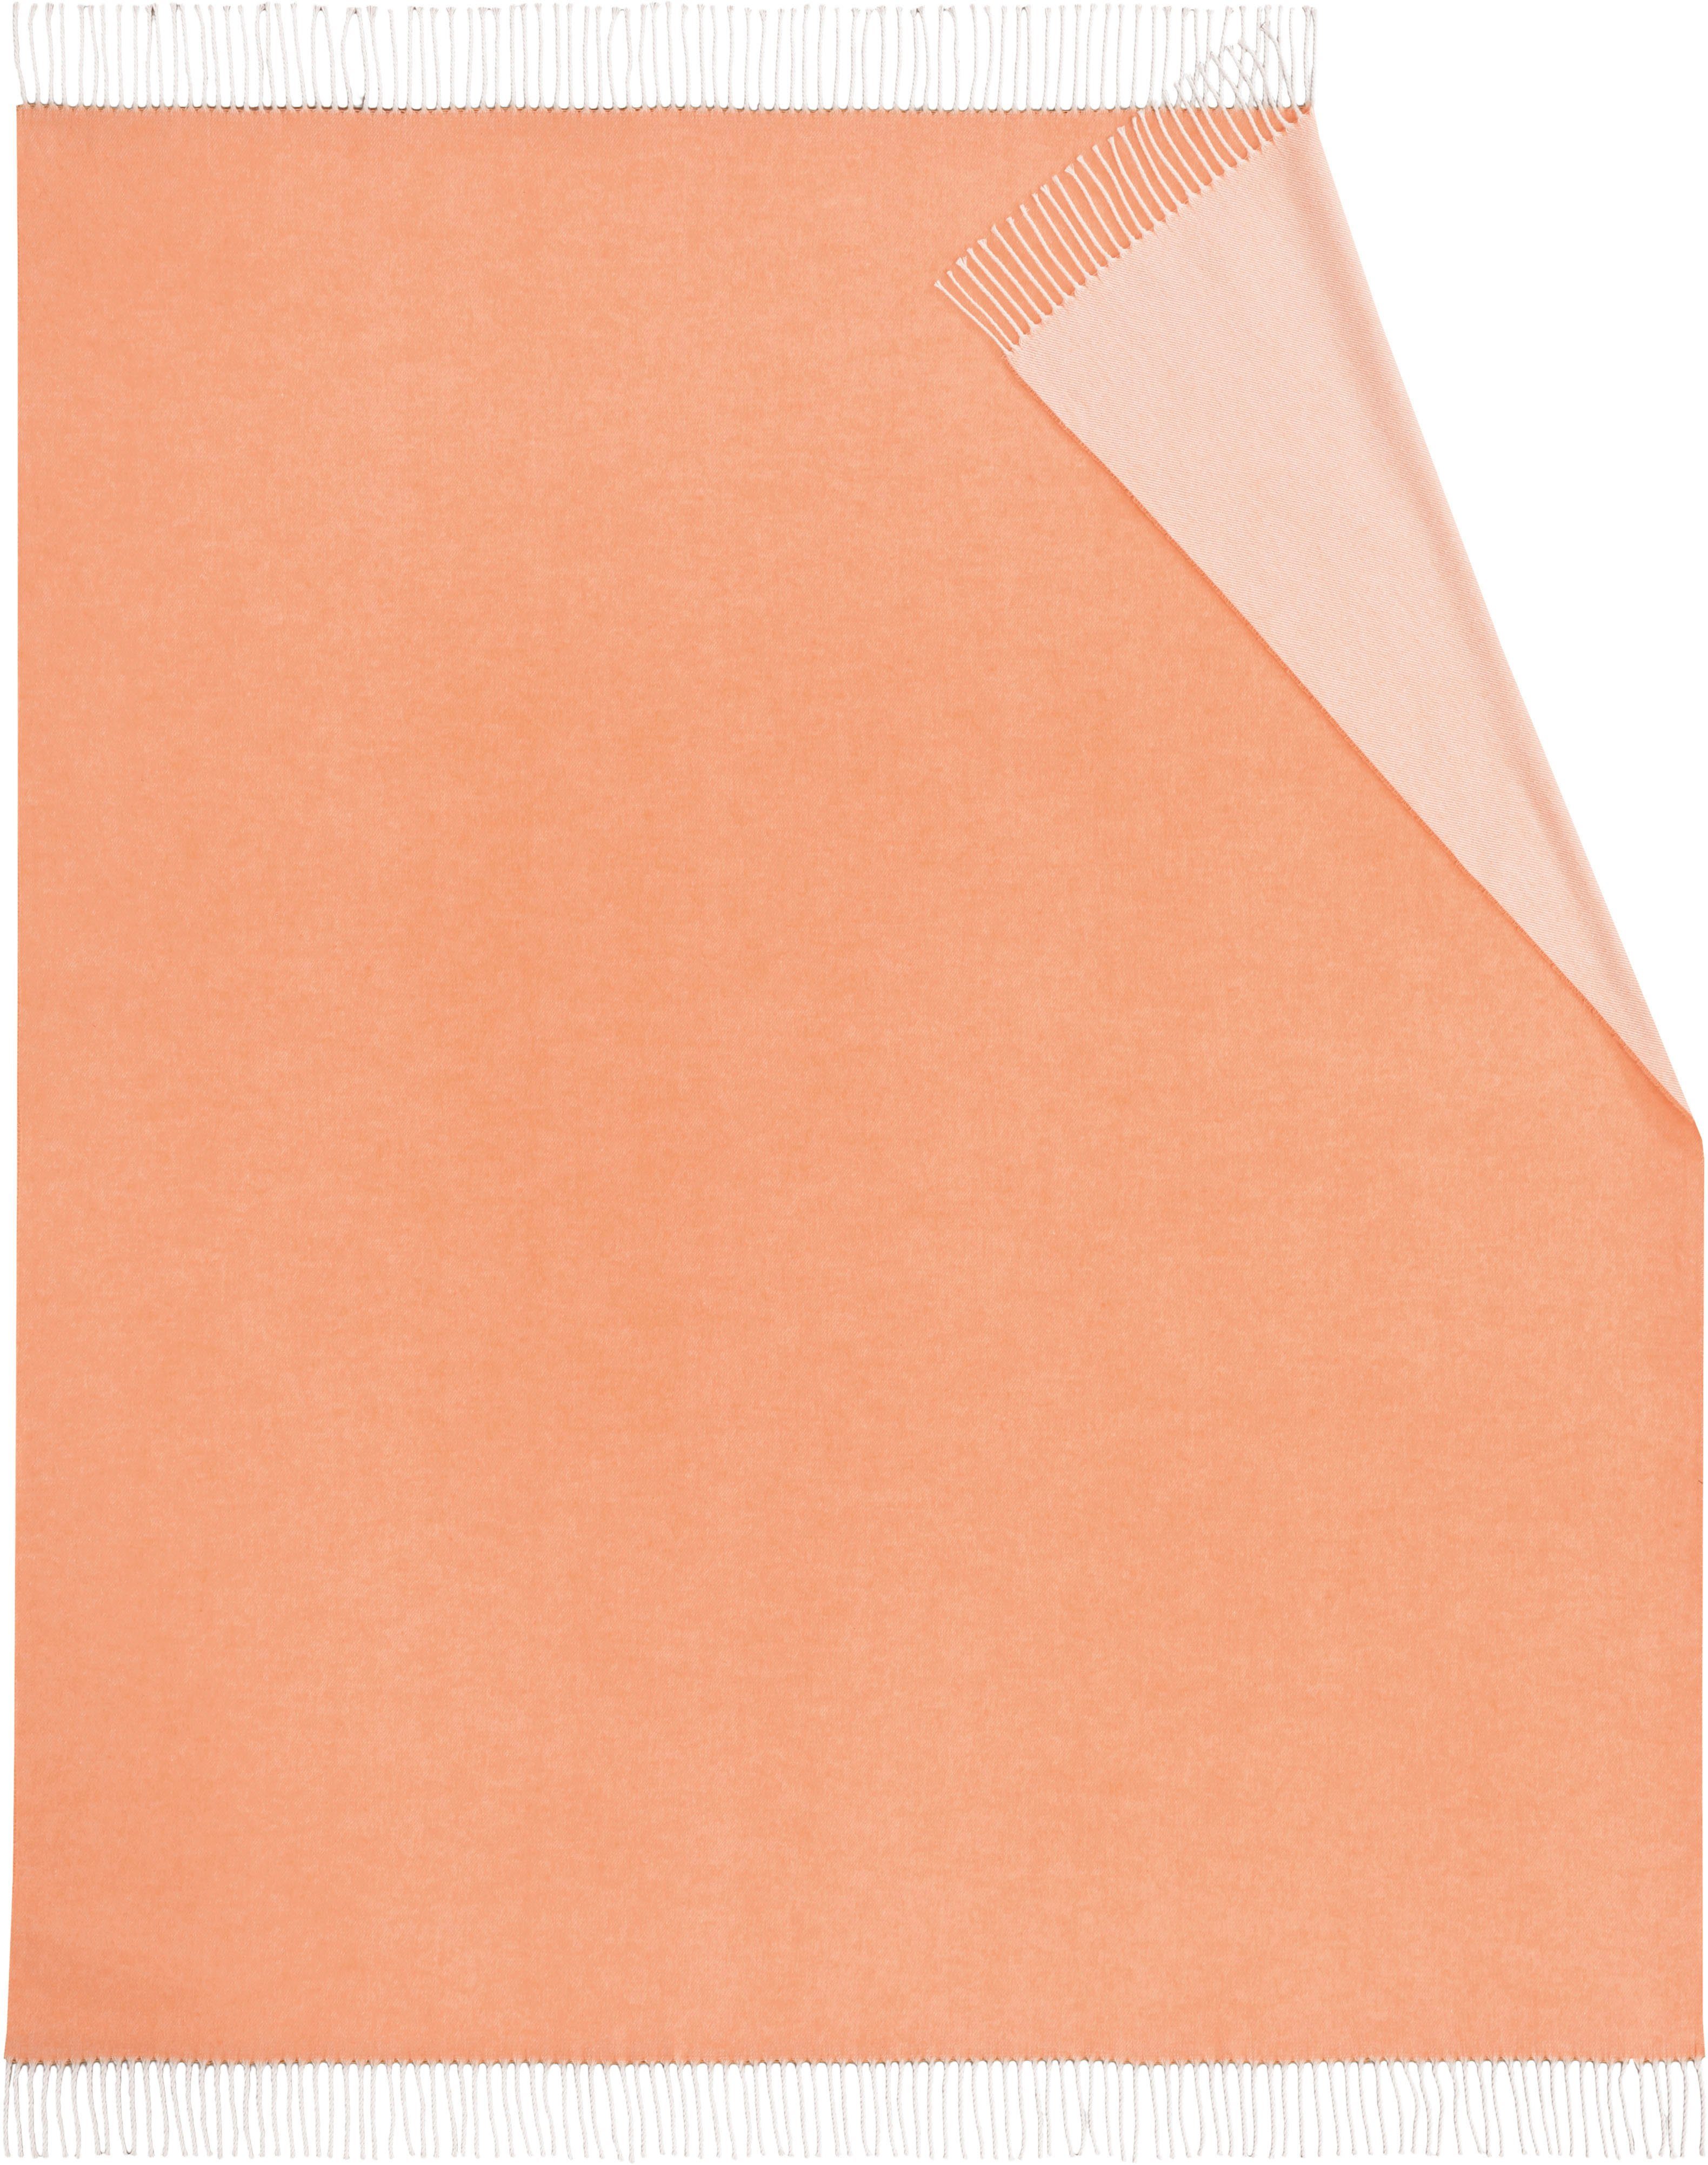 Plaid Twill, Biederlack, mit orange Uni-Farben, Kuscheldecke frischen